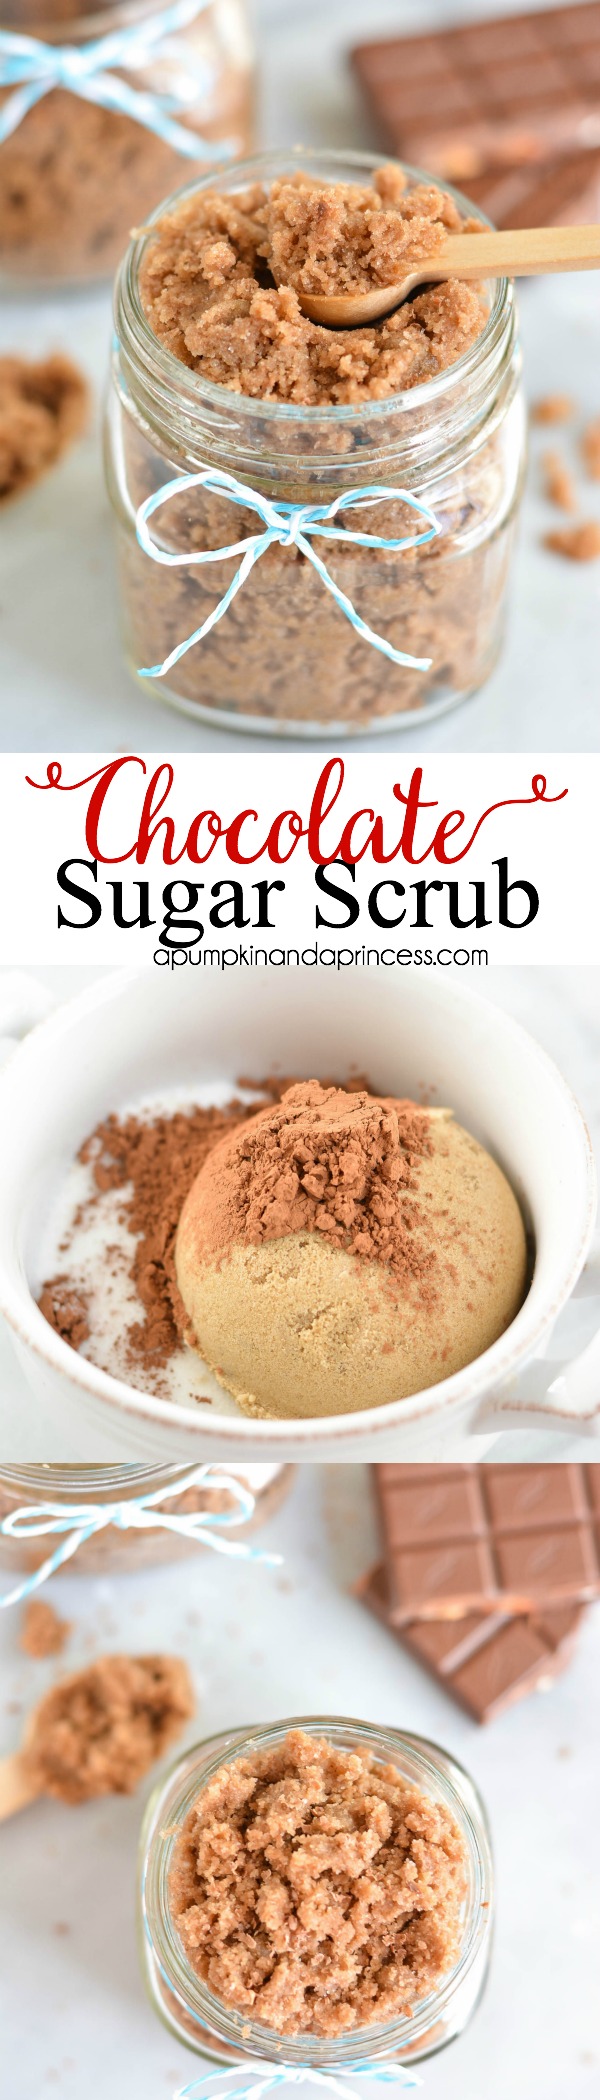 DIY Chocolate Sugar Scrub